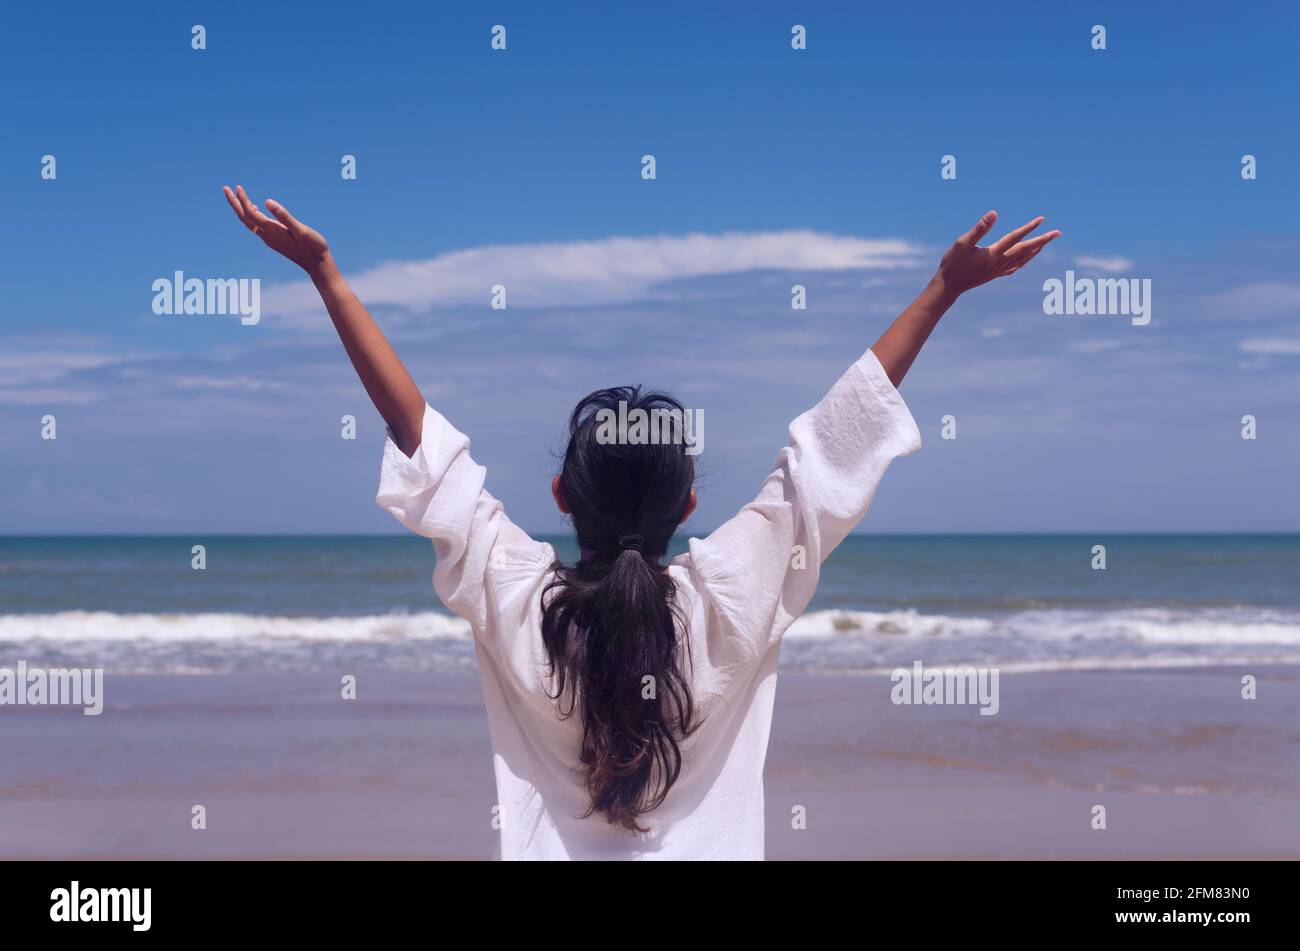 Menschen und gesundes Lifestyle-Konzept - Rückansicht junge Frau Genießen Sie den Blick auf das tropische Meer, während sich die Arme nach oben frei fühlen Mit blauem Himmel Hintergrund Stockfoto